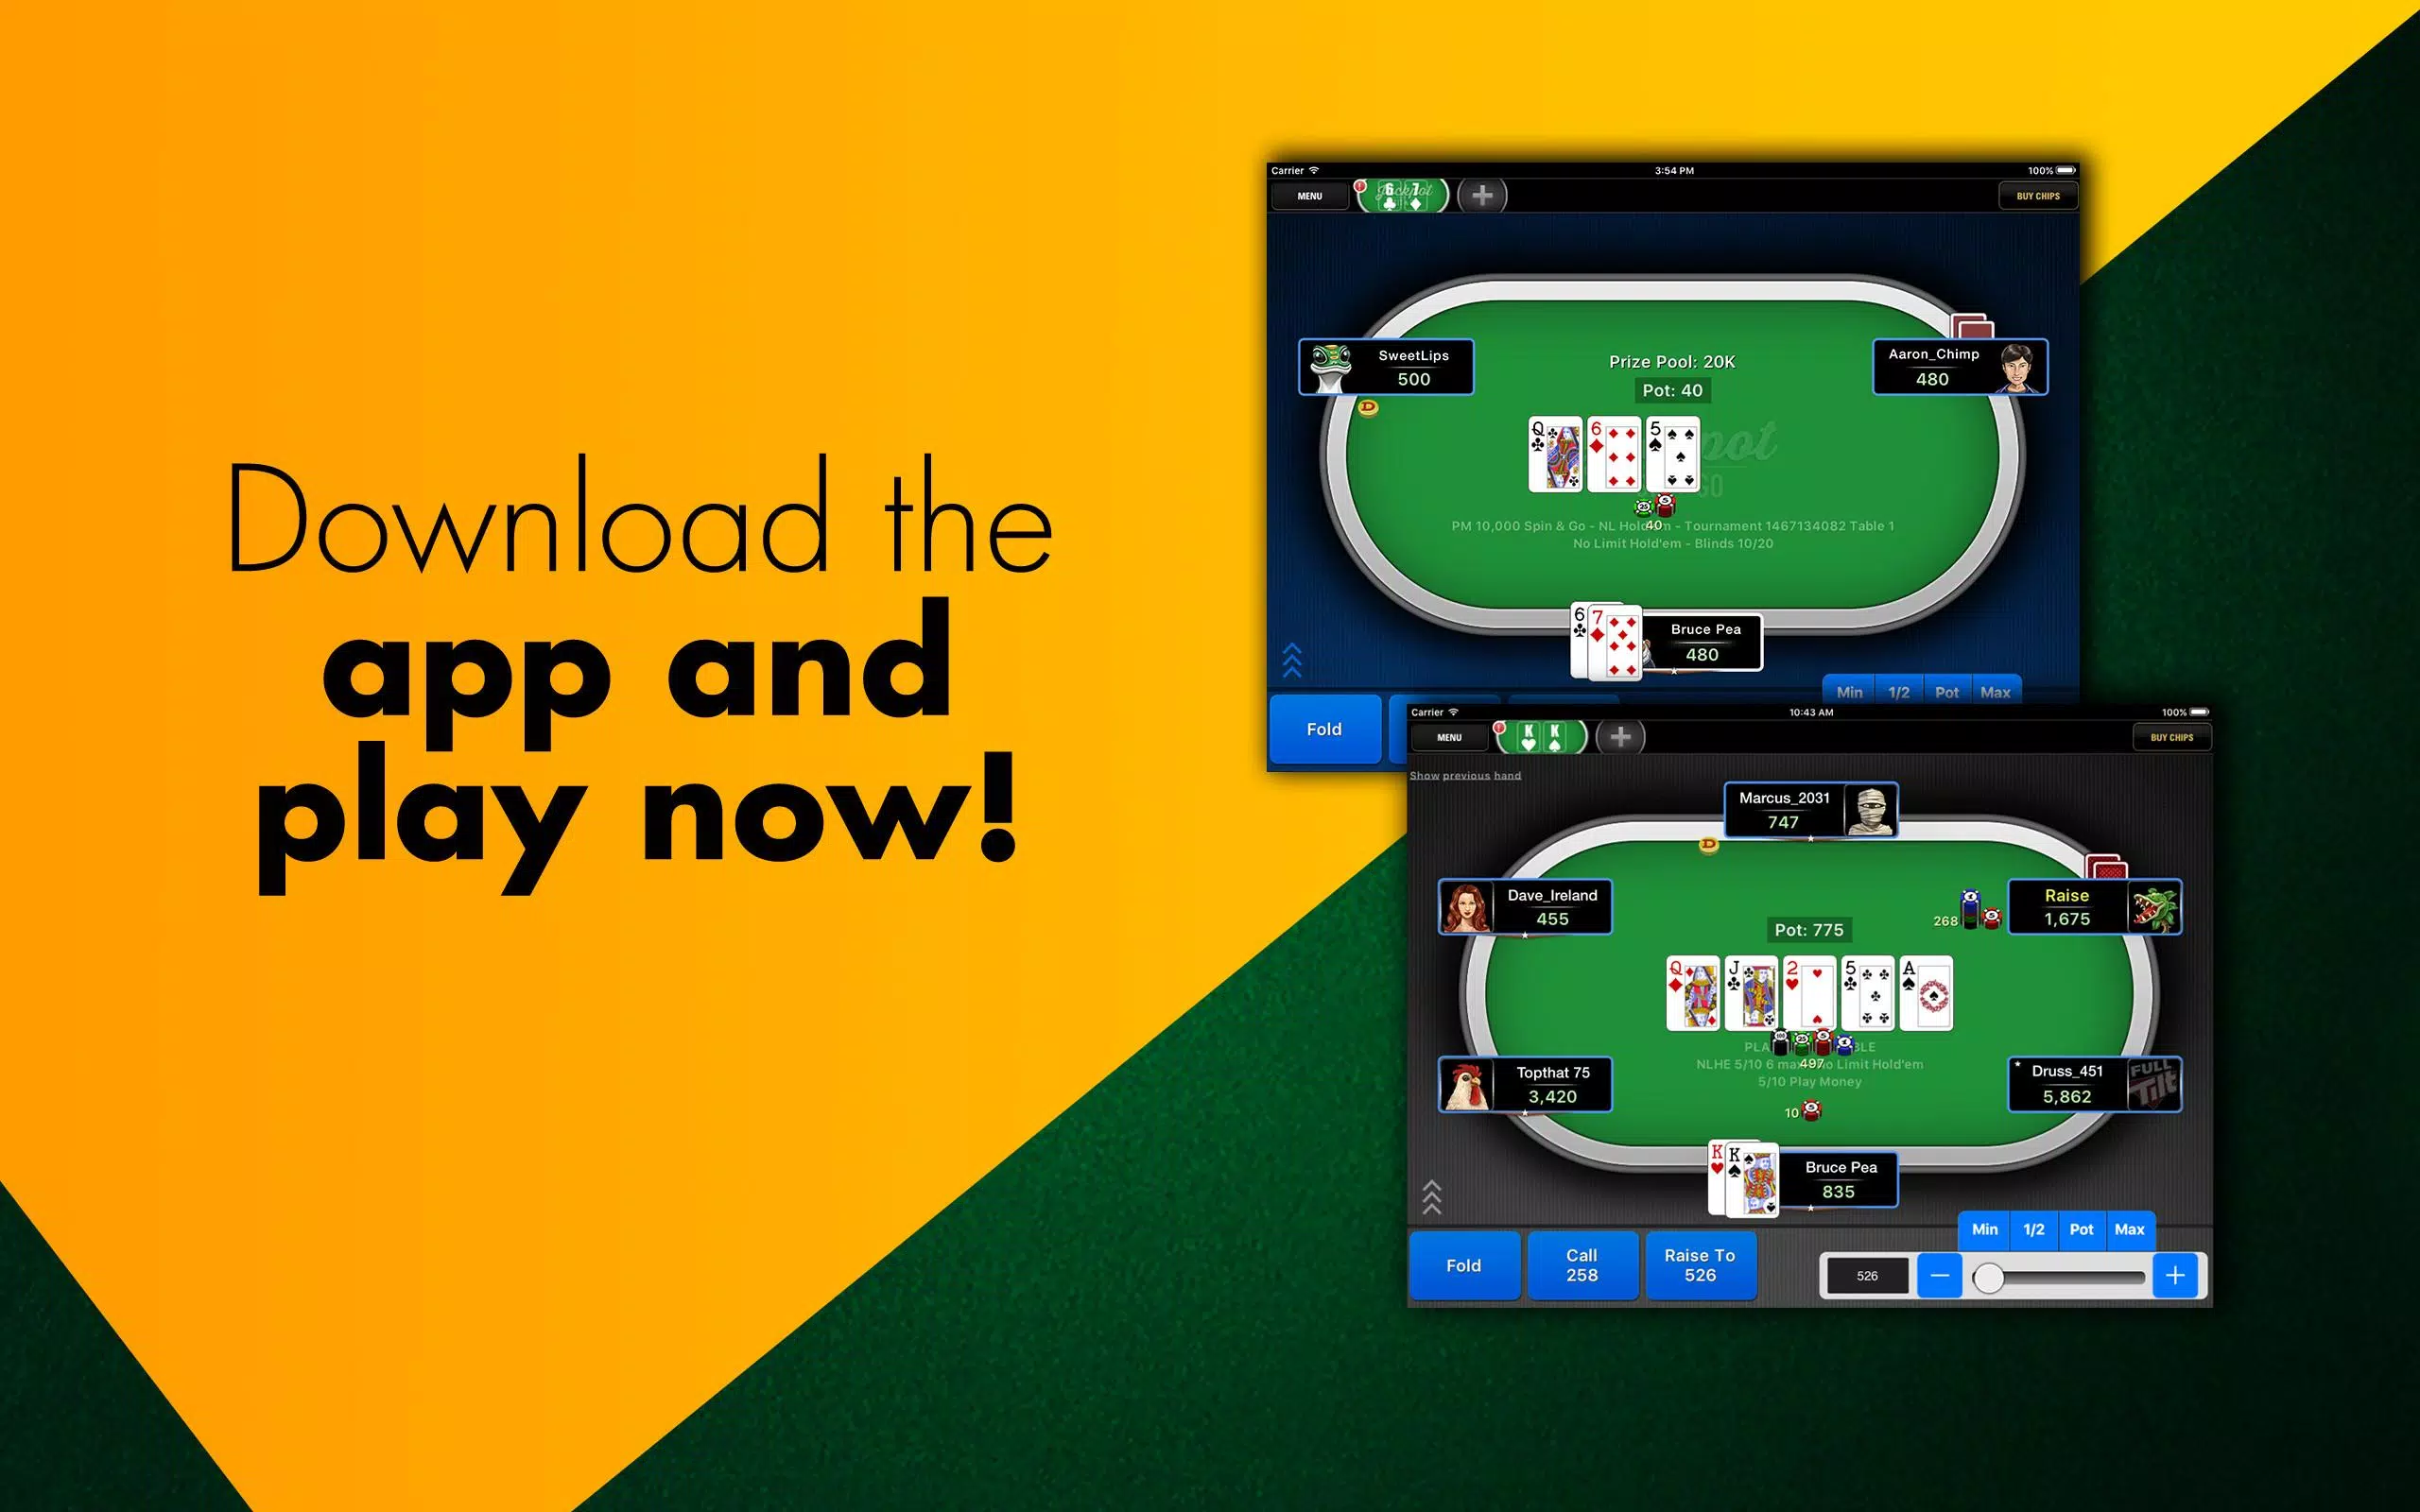 Full Tilt Poker: Texas Holdem APK for Android Download